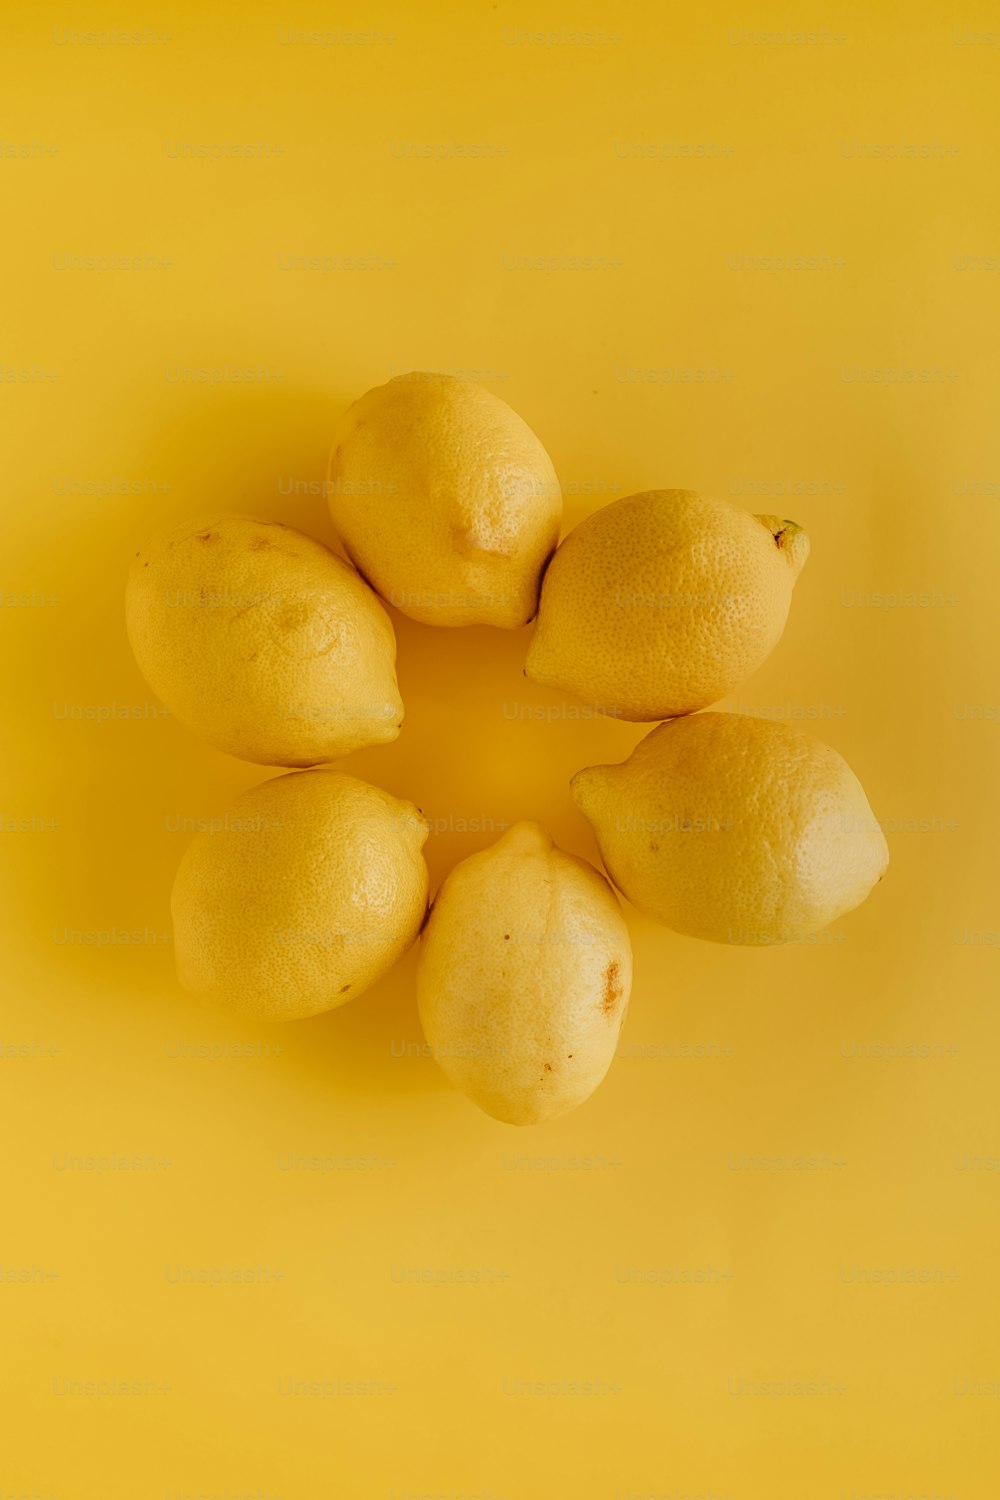 노란색 표면 위에 앉아 있는 레몬 그룹